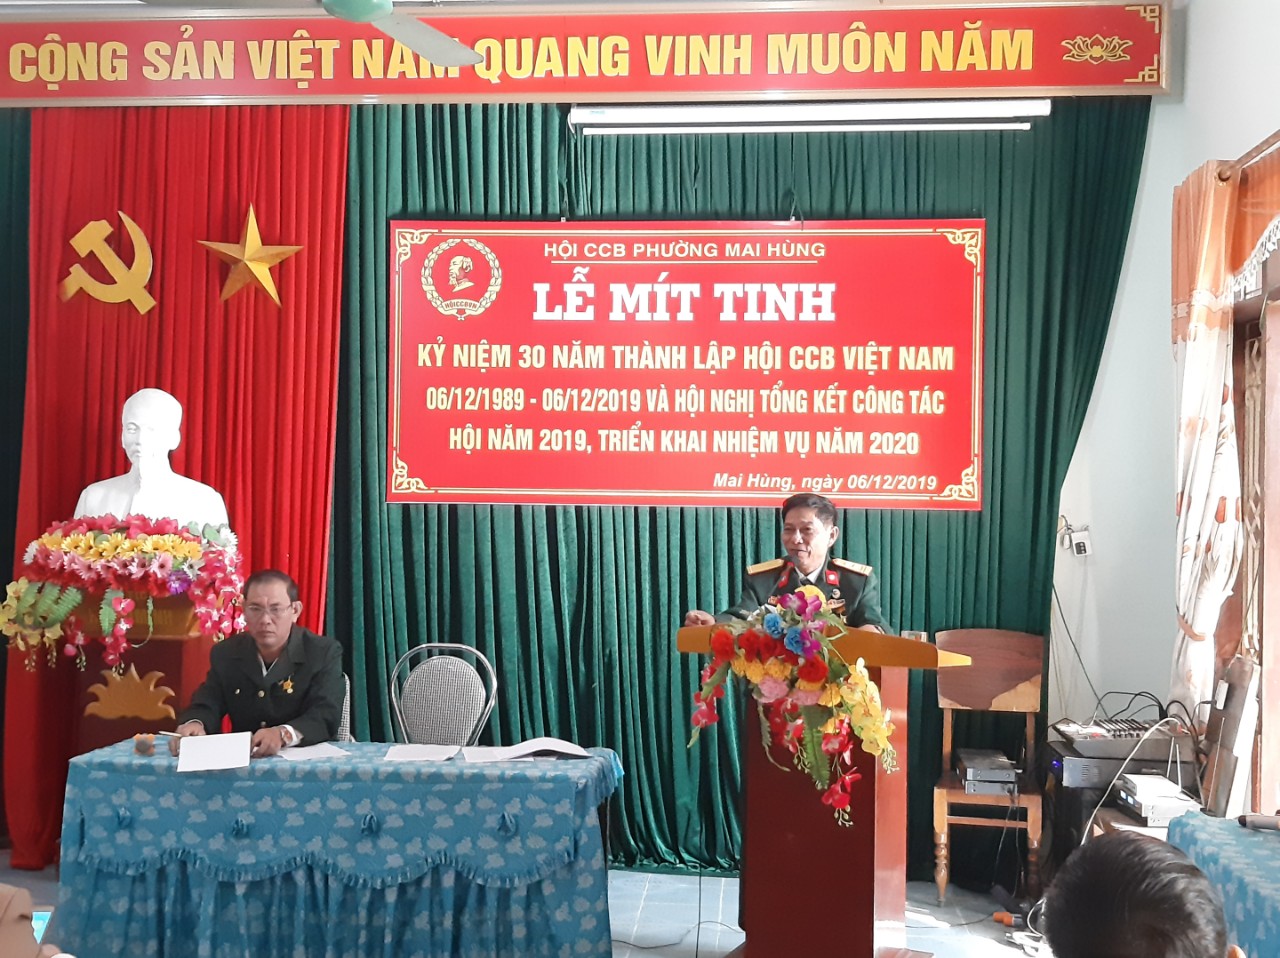 Hội Cựu chiến binh phường Mai Hùng tổ chức Mít tinh kỷ niệm 30 năm ngày thành lập Hội Cựu chiến Binh Việt Nam (06/12/1989-06/12/2019) và tổng kết công tác hoạt động hội năm 2019, triển khai nhiệm vụ năm 2020.